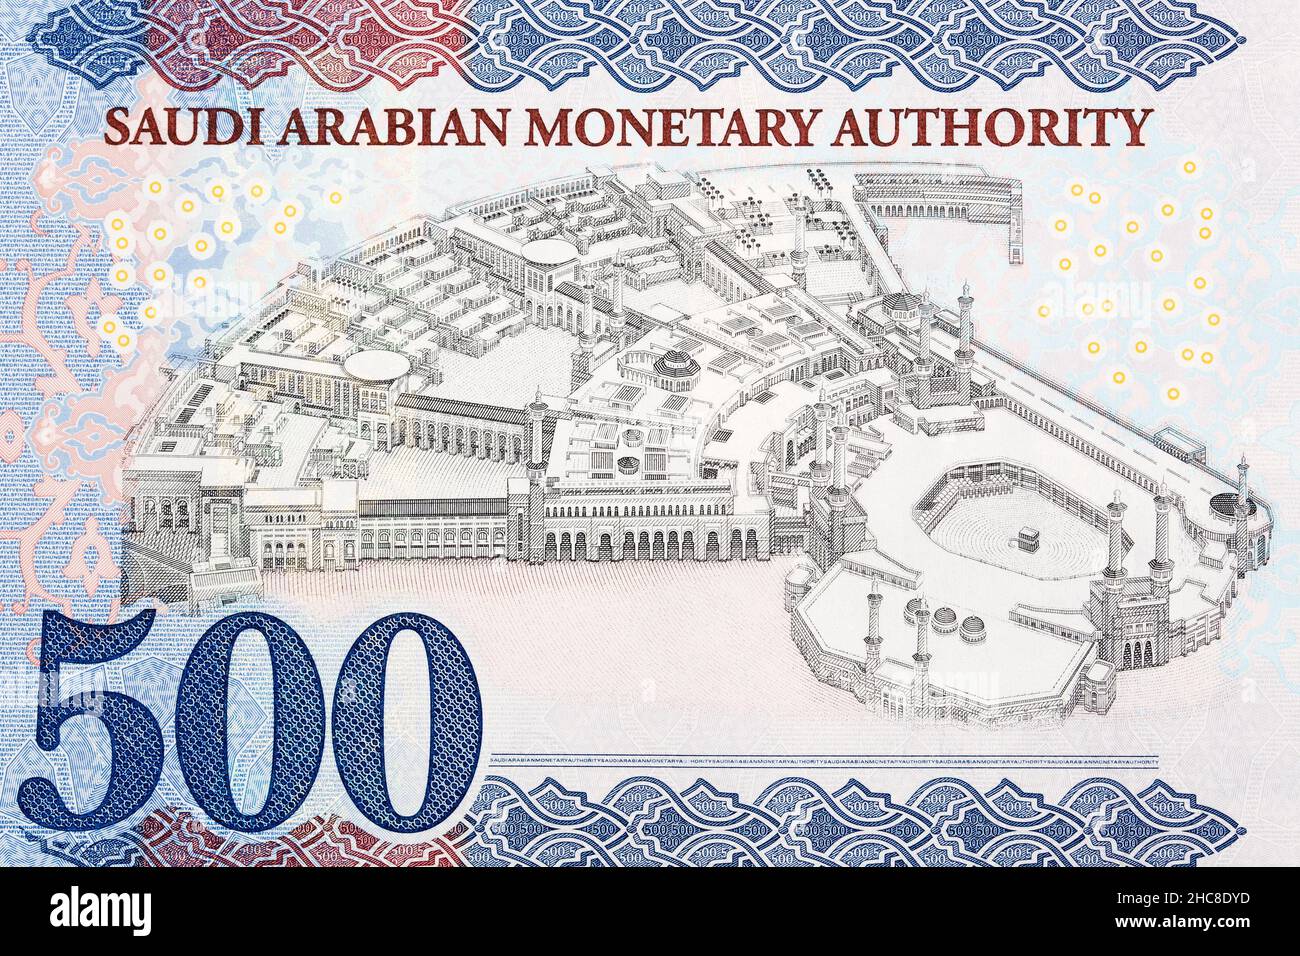 Blick auf eine aufwendige Struktur mit mehreren Türmen aus Saudi-arabischem Geld - Riyal Stockfoto